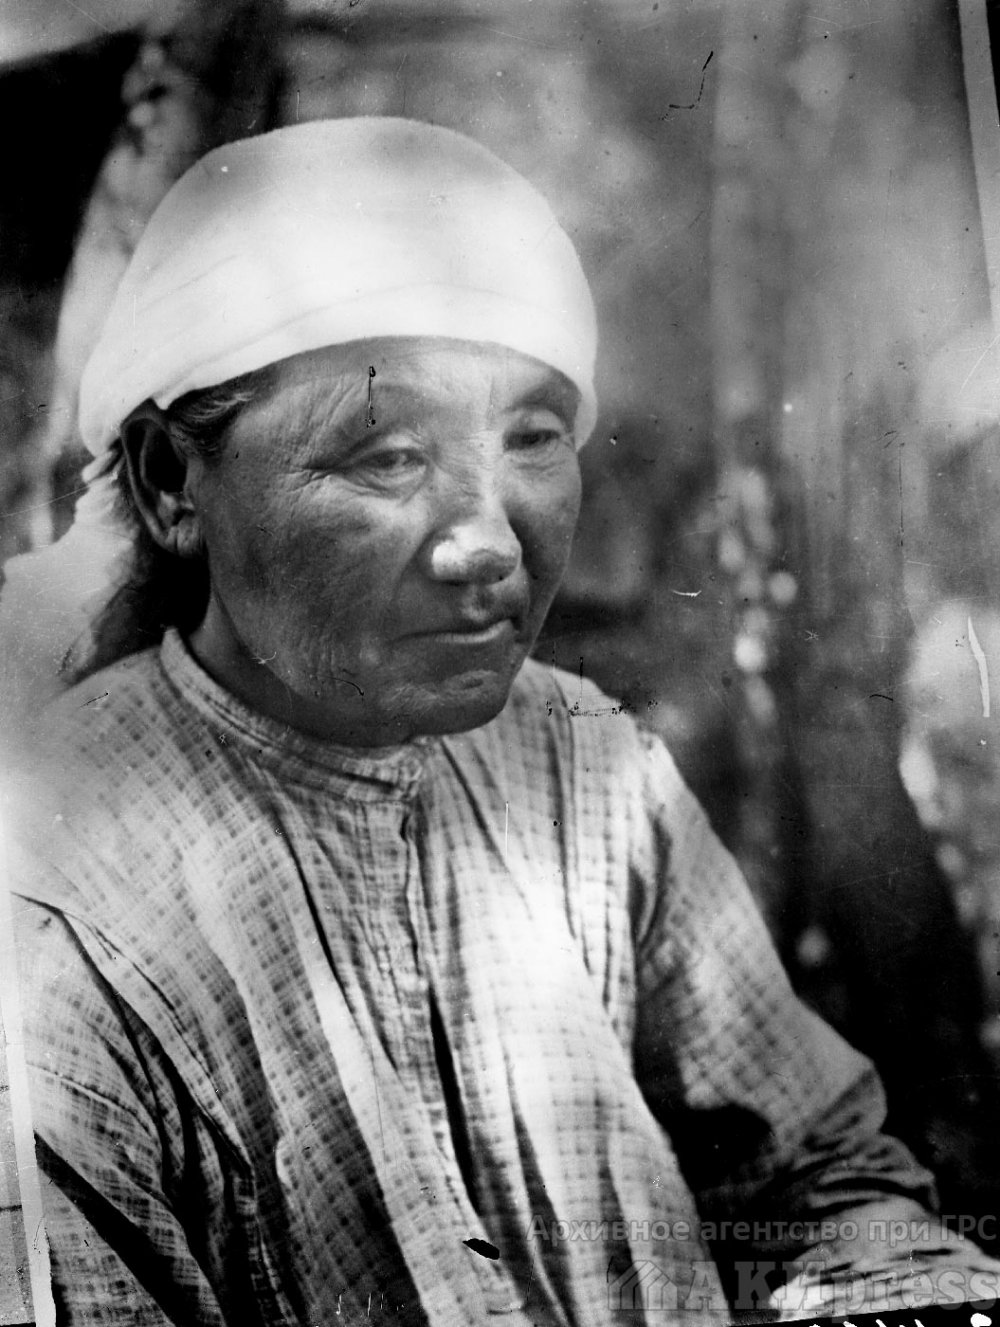 Кыргызы во время восстания 1916 года. Госархив / АКИpress